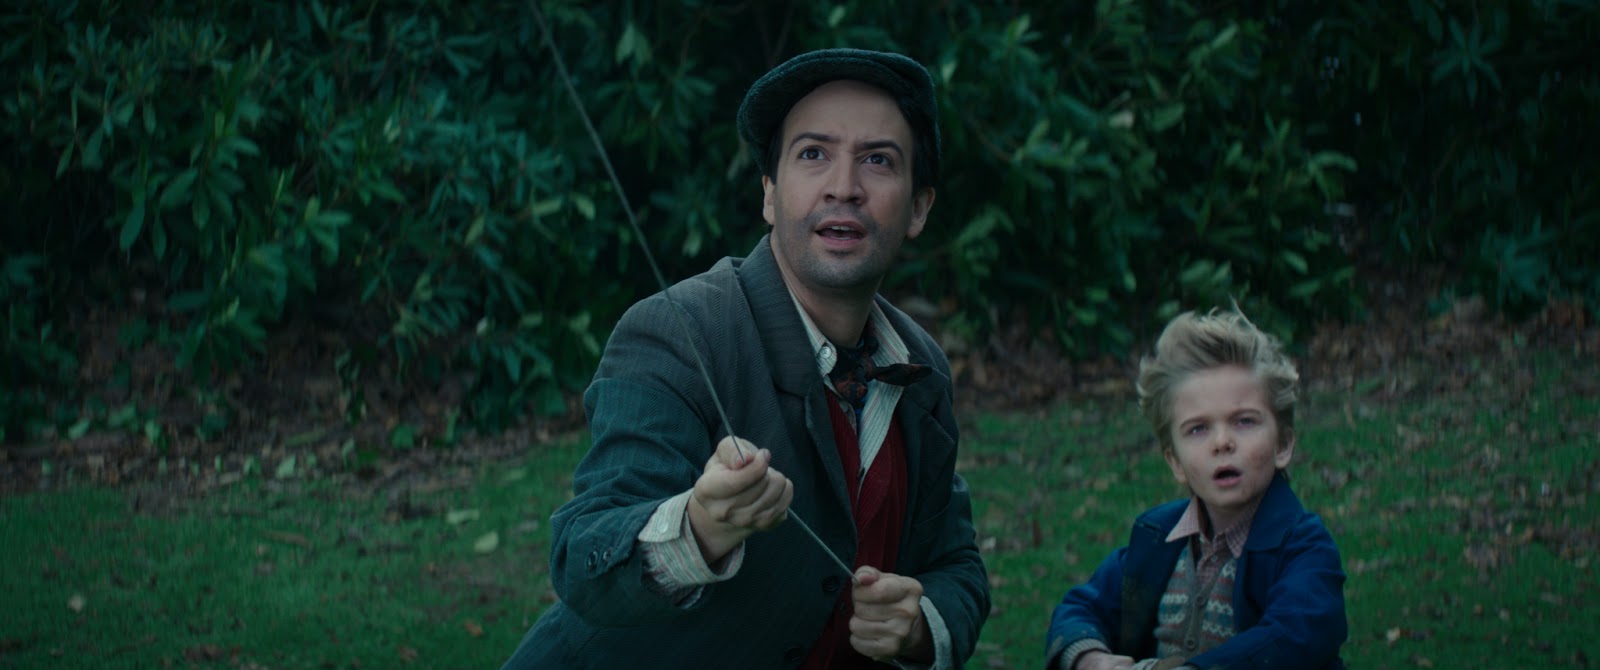 , Mary Poppins Returns- New Teaser Trailer